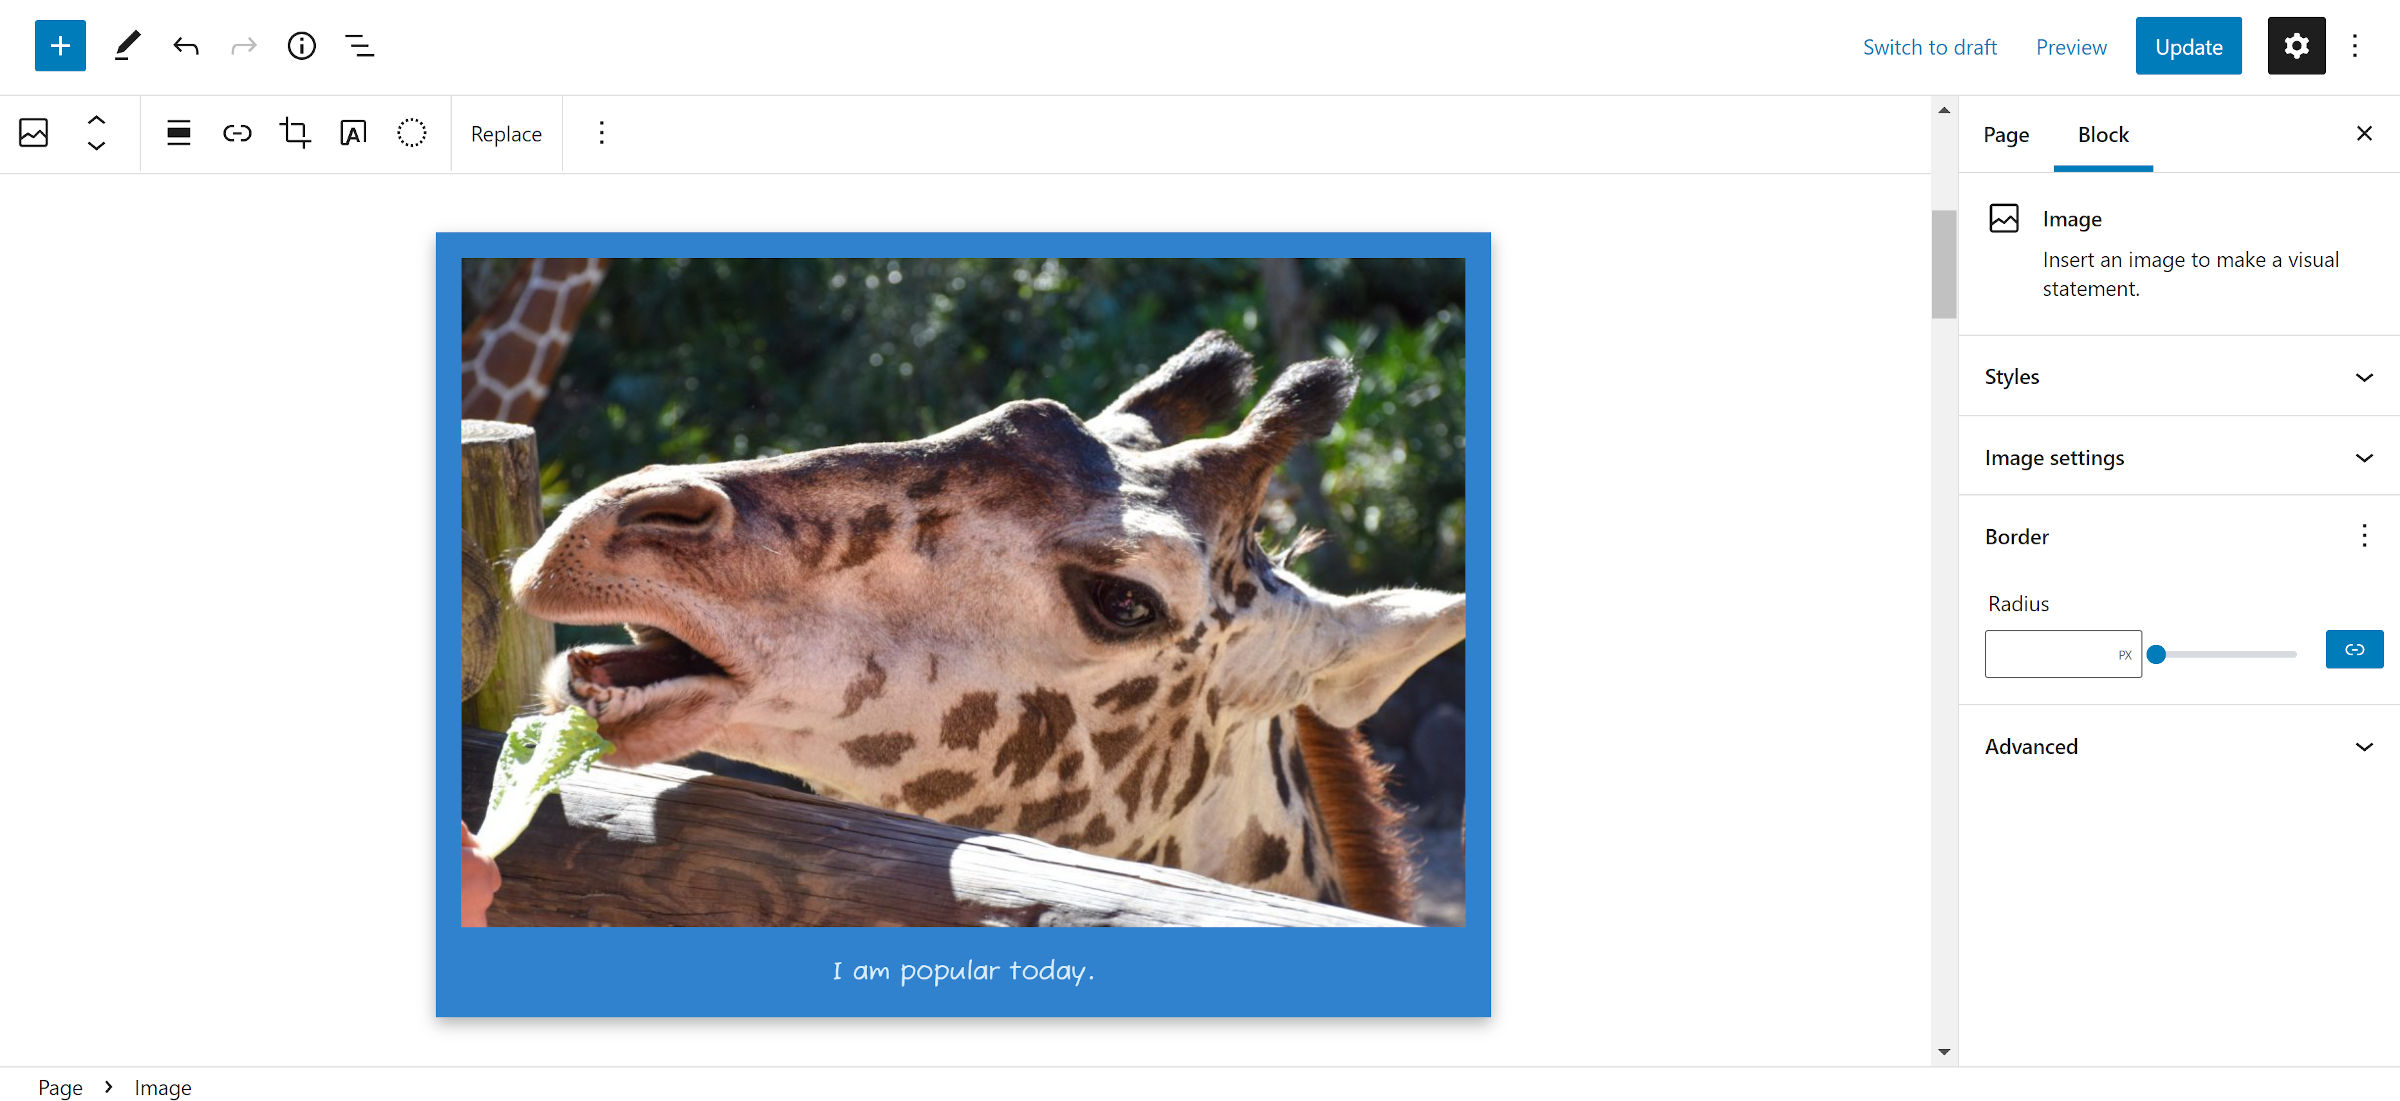 Dans l'éditeur WordPress, photo d'une girafe dans un cadre de style Polaroid avec un fond bleu.